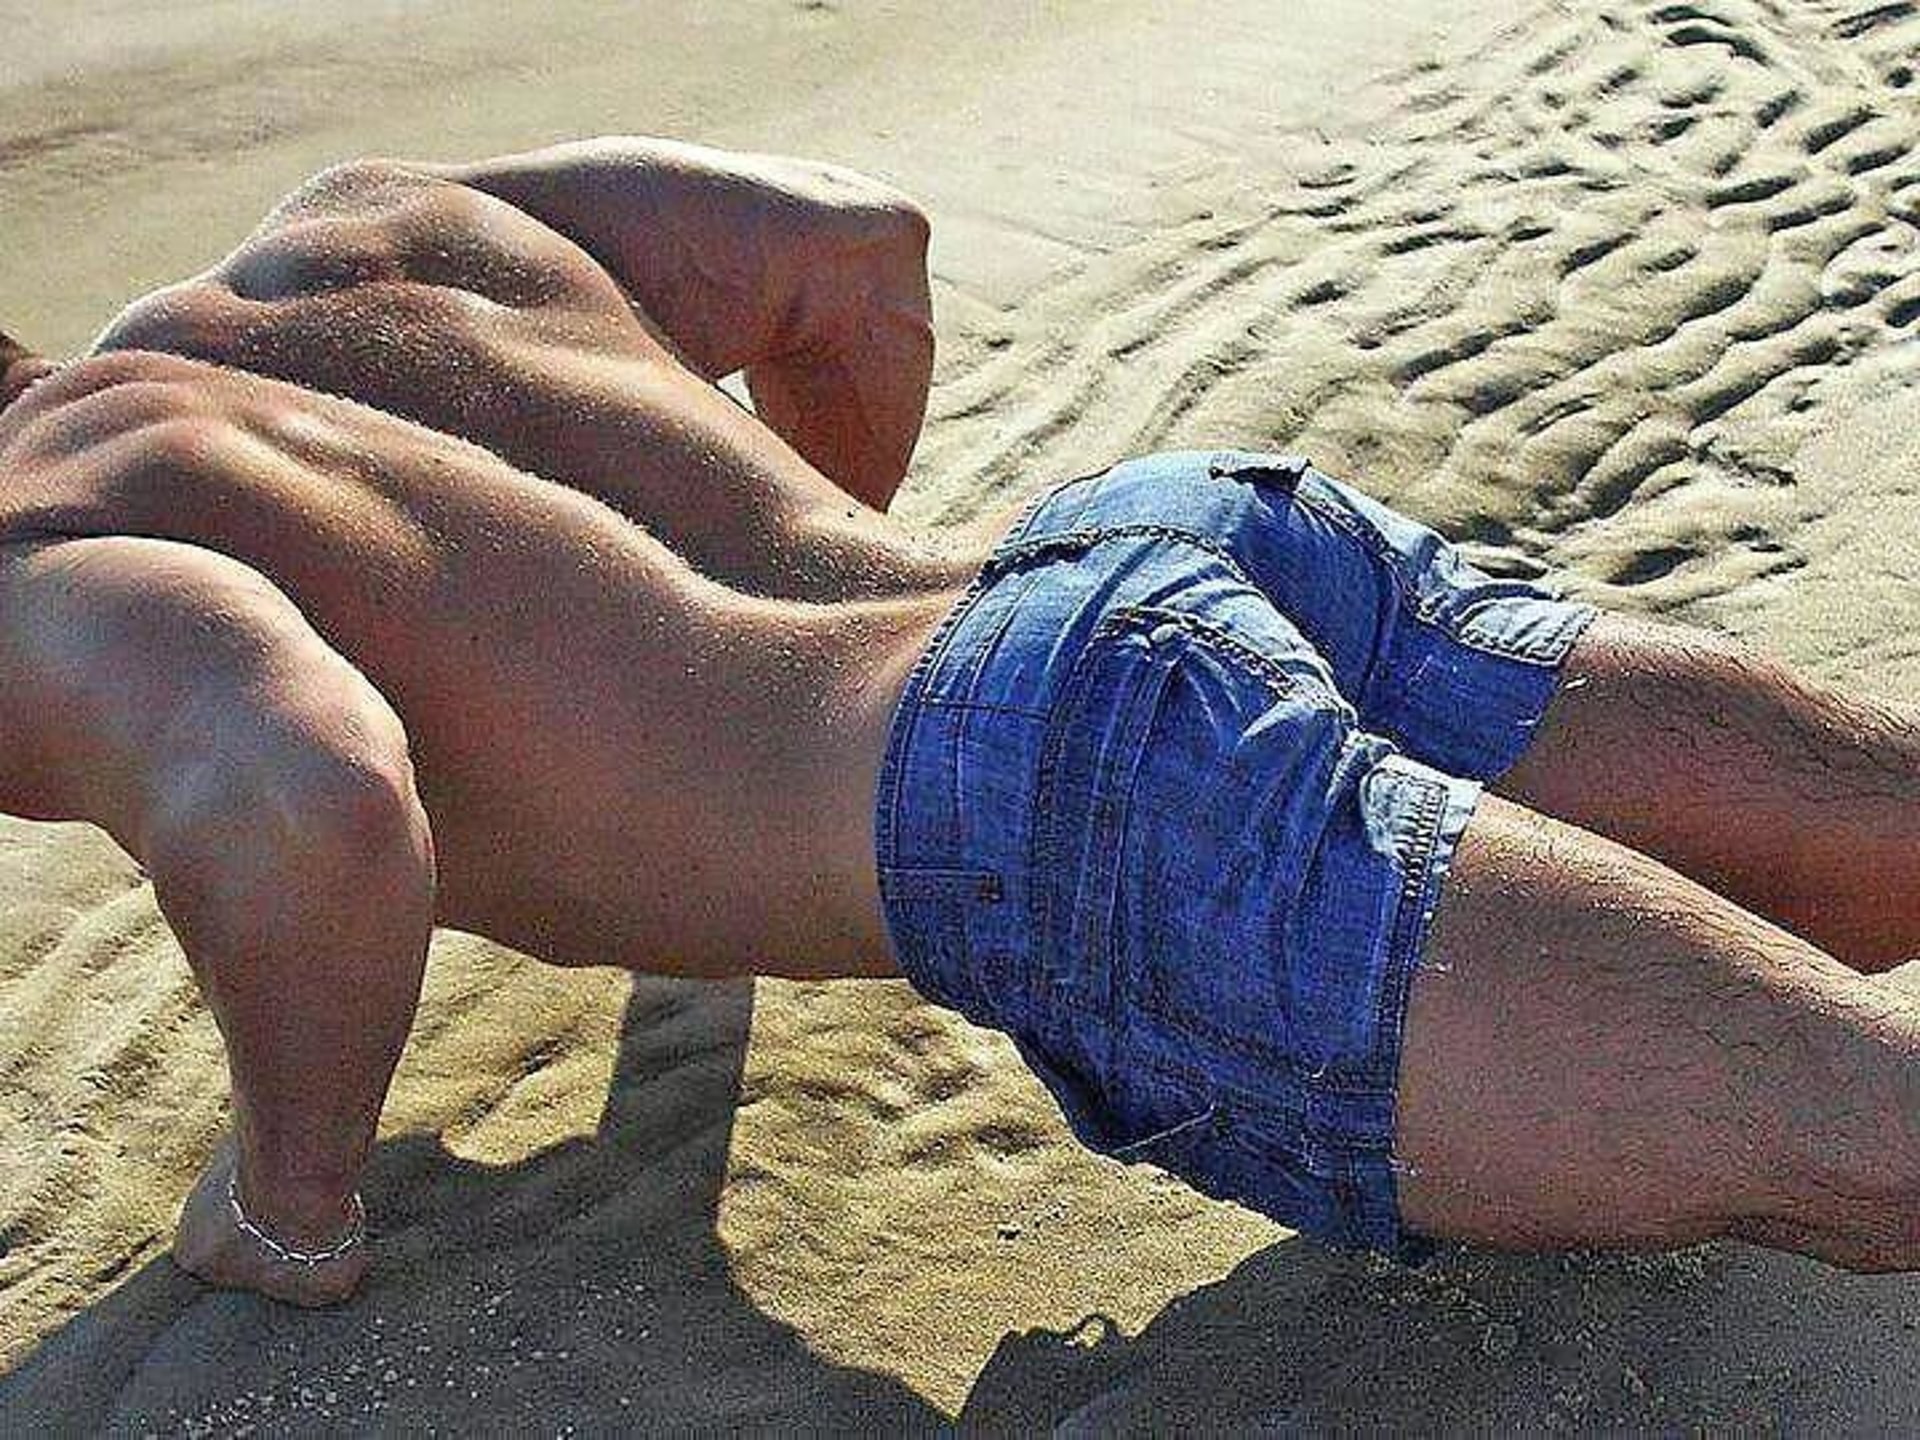 стояк на пляже